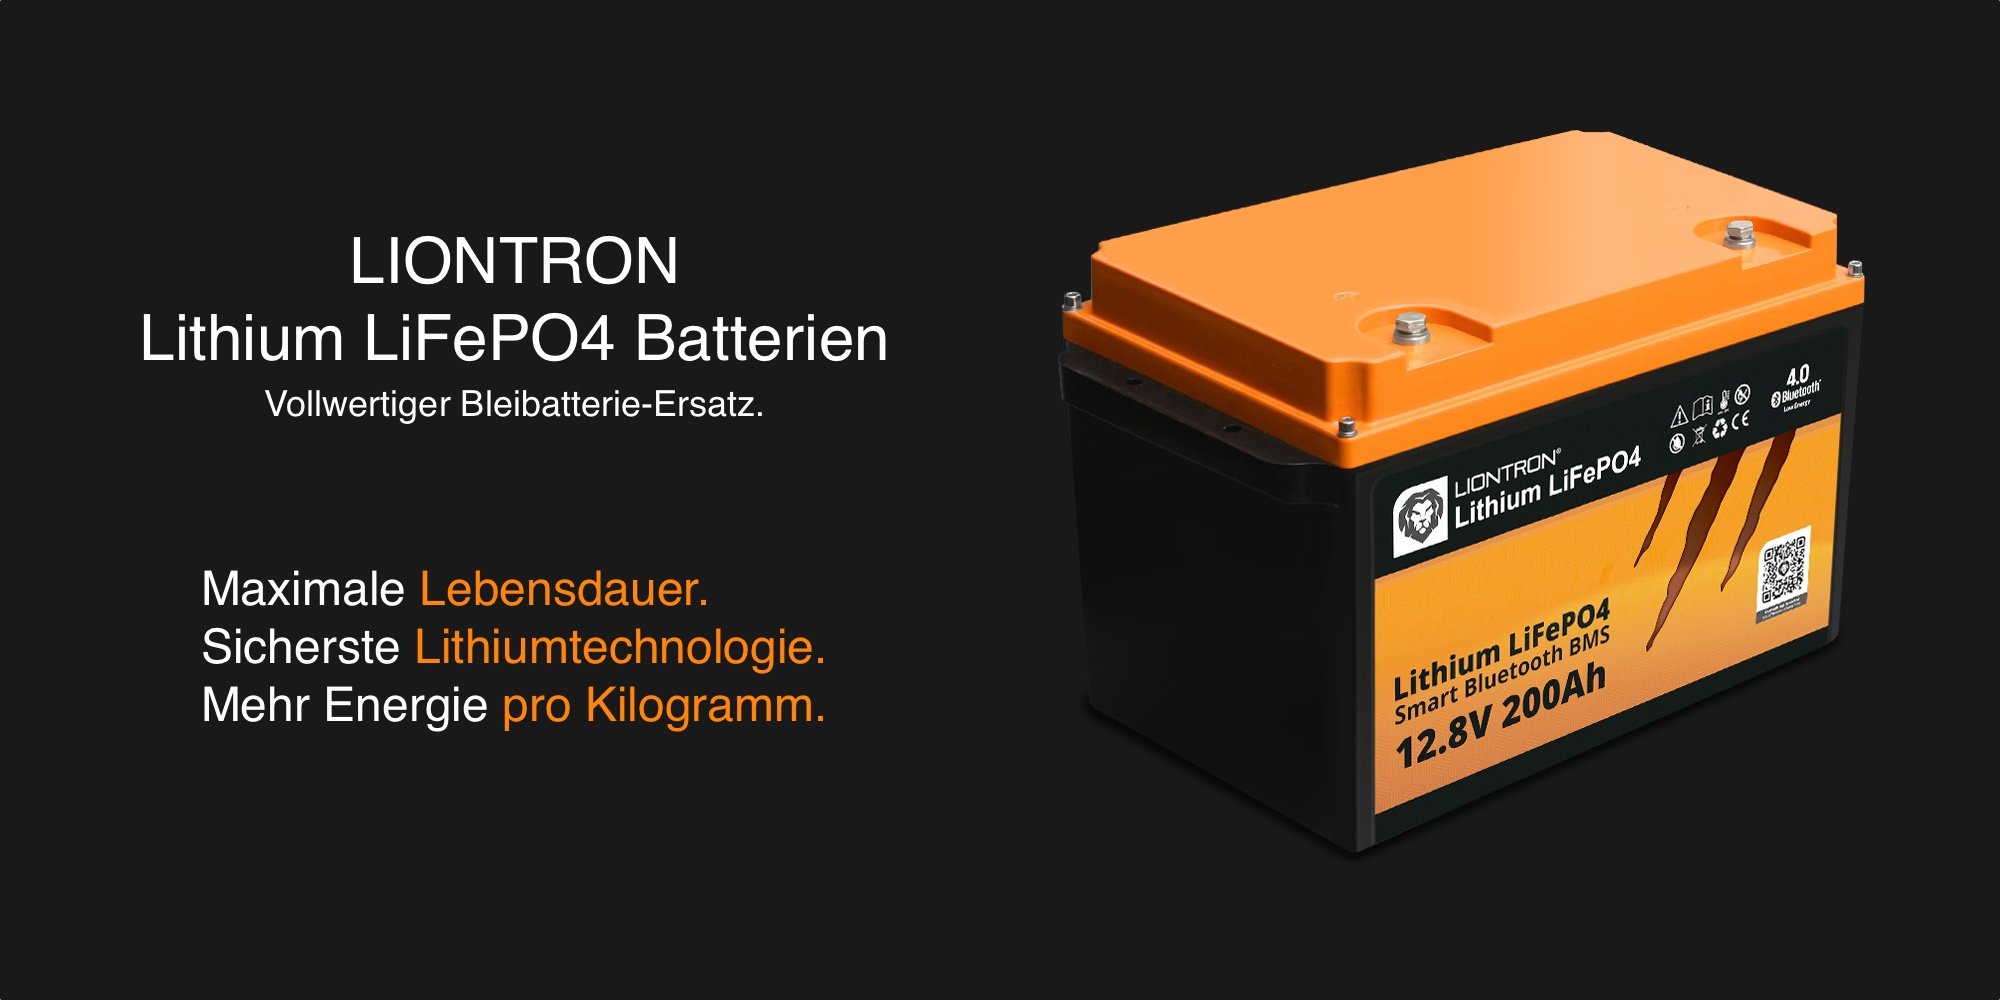 Untersitz Lithium Batterien für Wohnmobil & Van